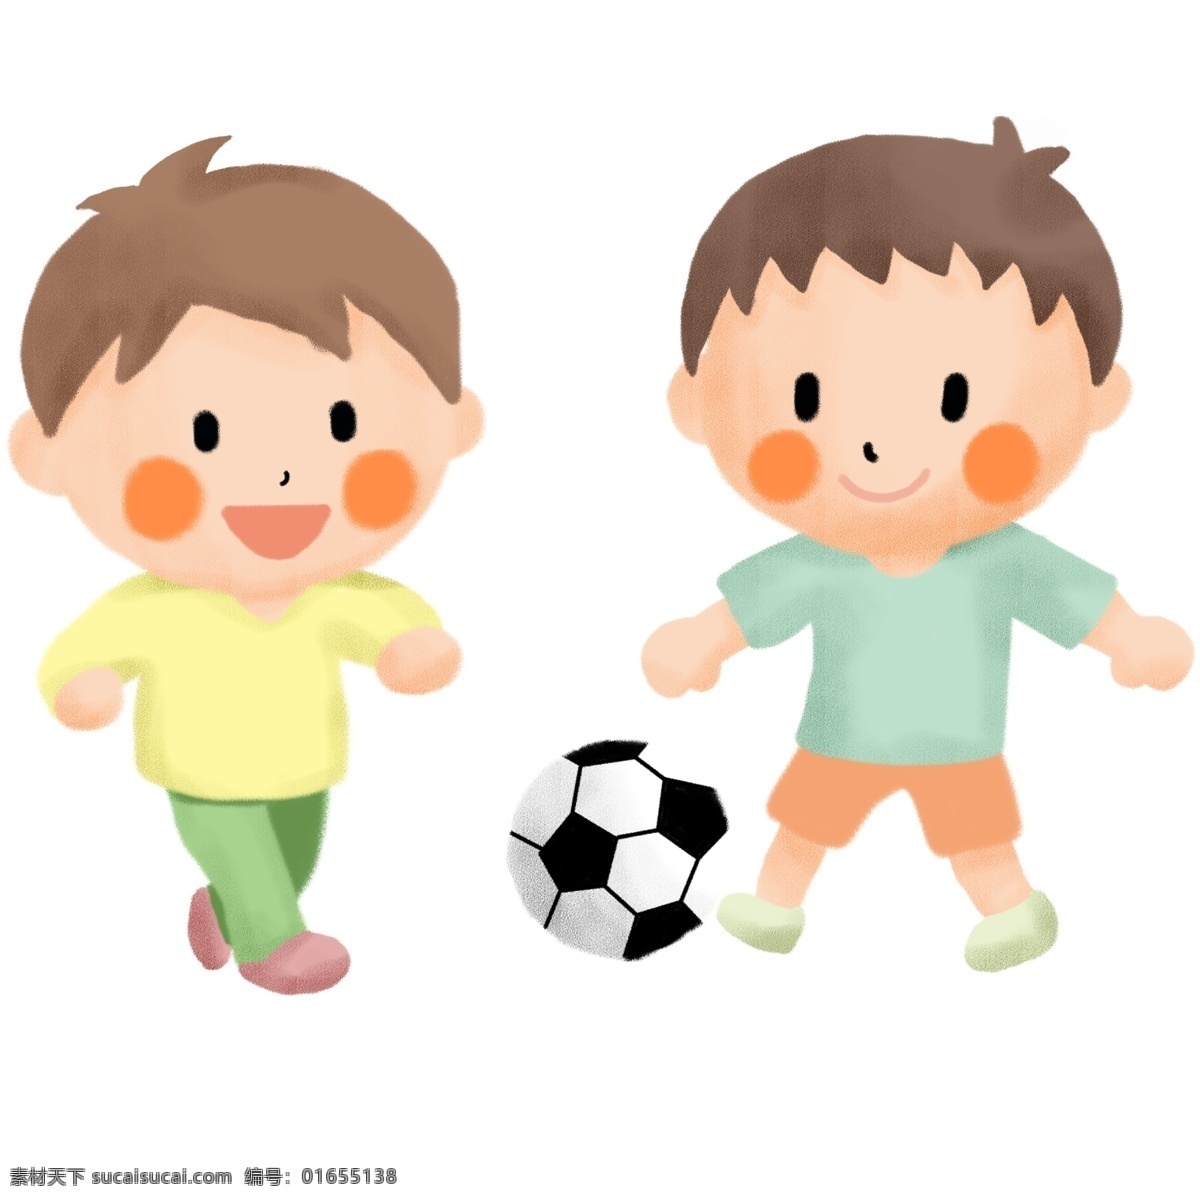 足球比赛 手绘 卡通 足球 运动会 草坪 运动 可爱 足球小子 竞赛 足球竞赛 绿茵地 激烈 激烈的竞赛